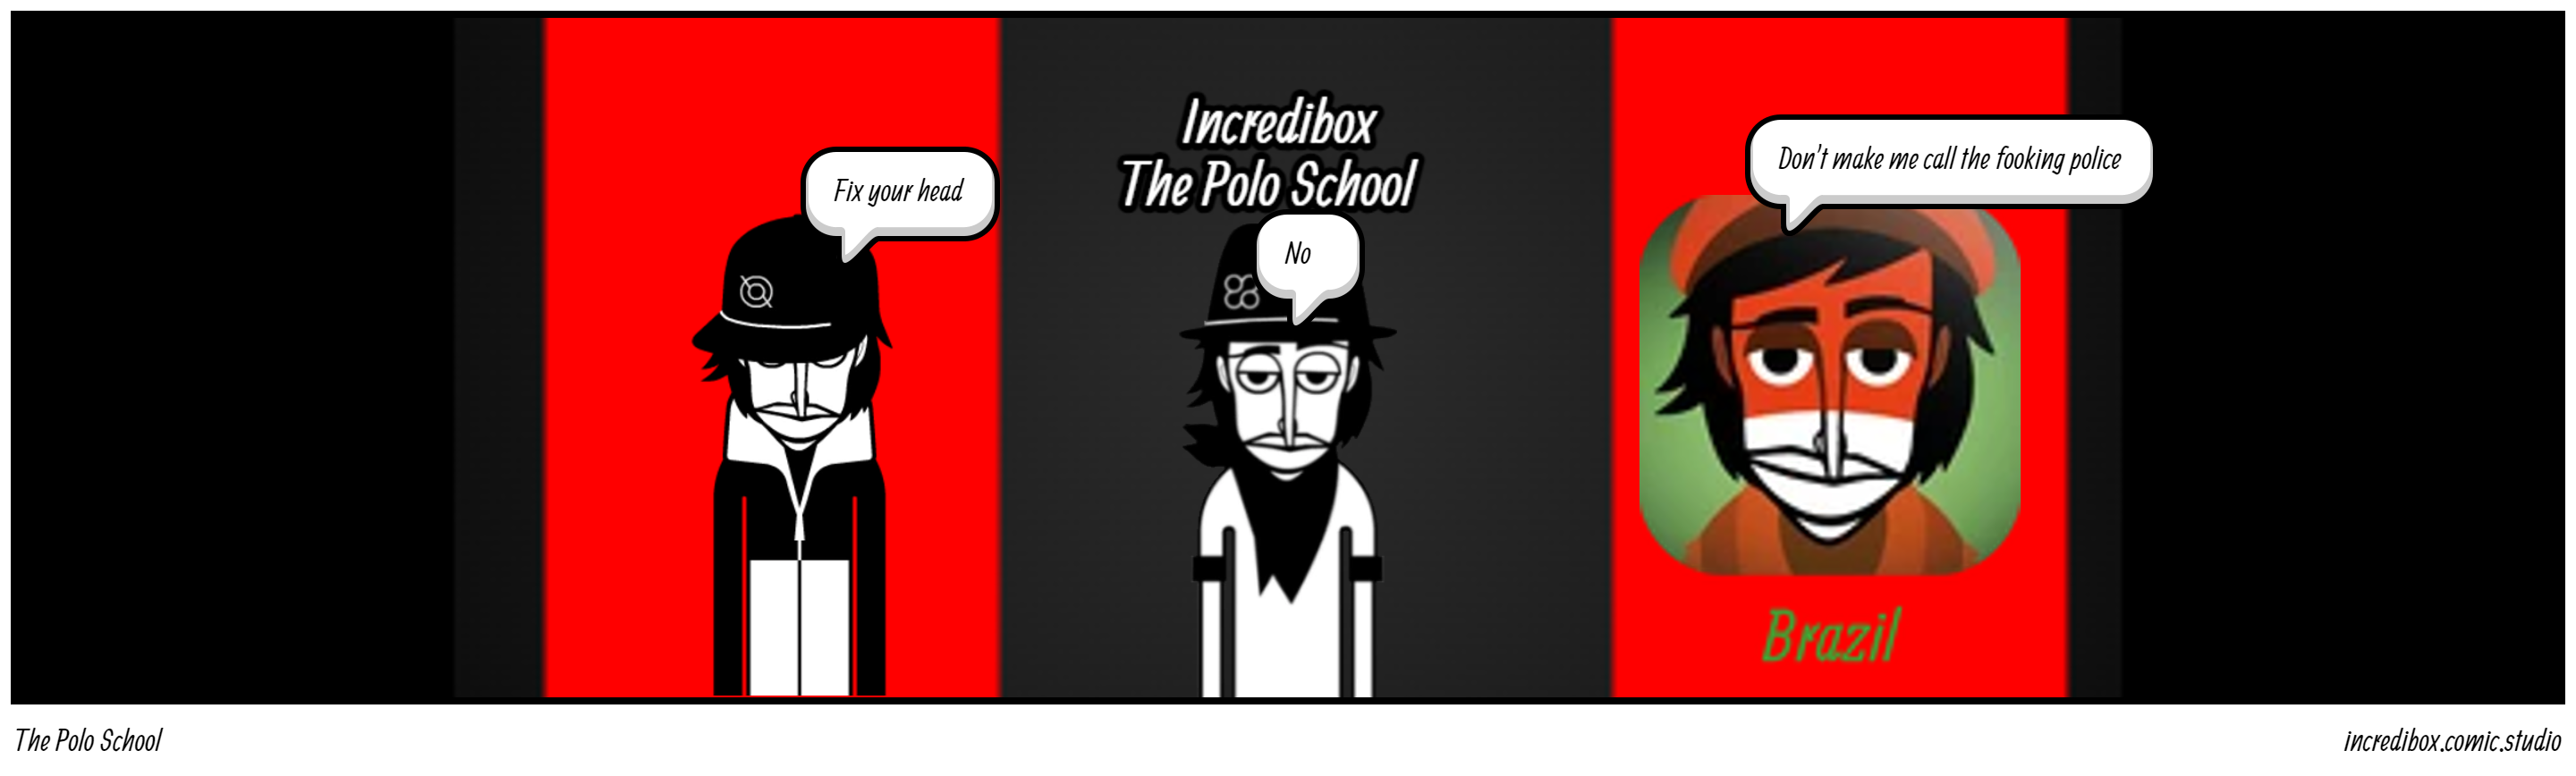 The Polo School